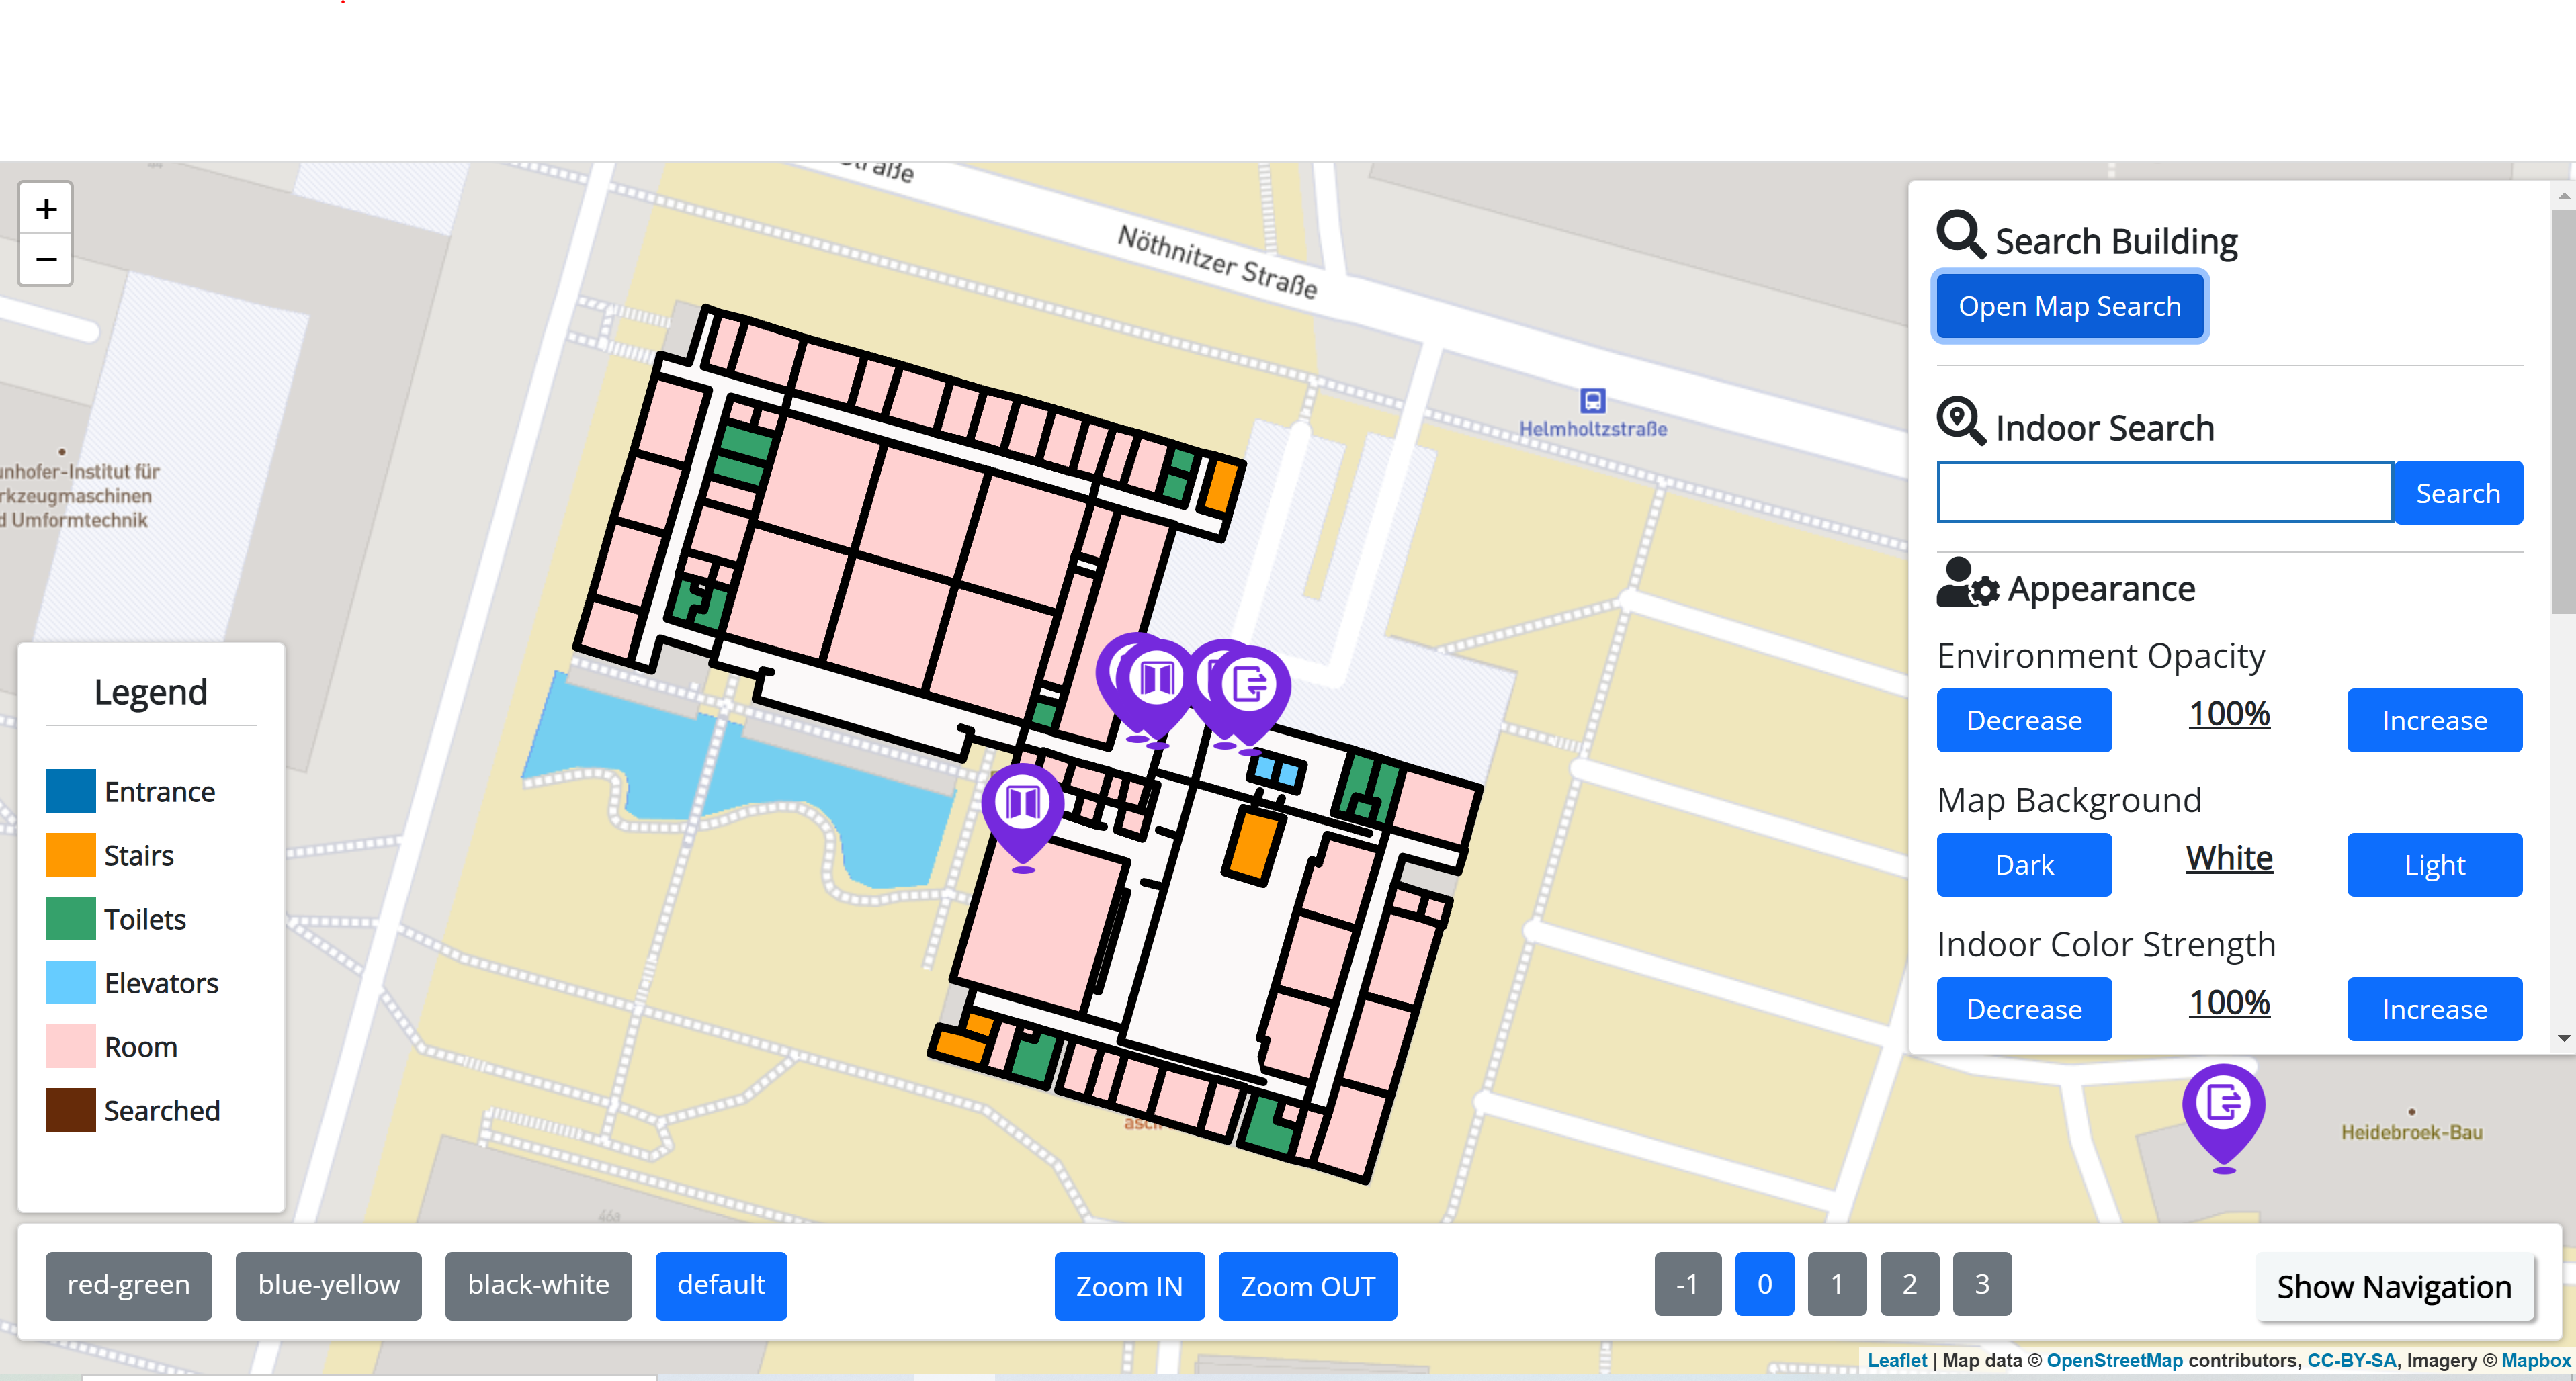 Screenshot des Prototypen. In der Mitte ist eine Gebäudekarte mit verschiedenen Markern und Symbolen zu sehen. Die Räume haben unterschiedliche Farben. Links ist eine Legende mit 6 Einträgen, wo die Farben erklärt werden. Am unteren Rand ist eine Einstellleiste mit den Buttons: red-green, blue-yellow, black-white, default, zoom in, zoom out, -1, 0, 1, 2, 3 und show Navigation. Am rechten Rand ist eine Navigationsleiste mit einer Suchfunktion für Gebäude und einer Indoor Suche, Anpassungen für die Kartenumgebung, den Karten Hintergrund, Farbstärken. 